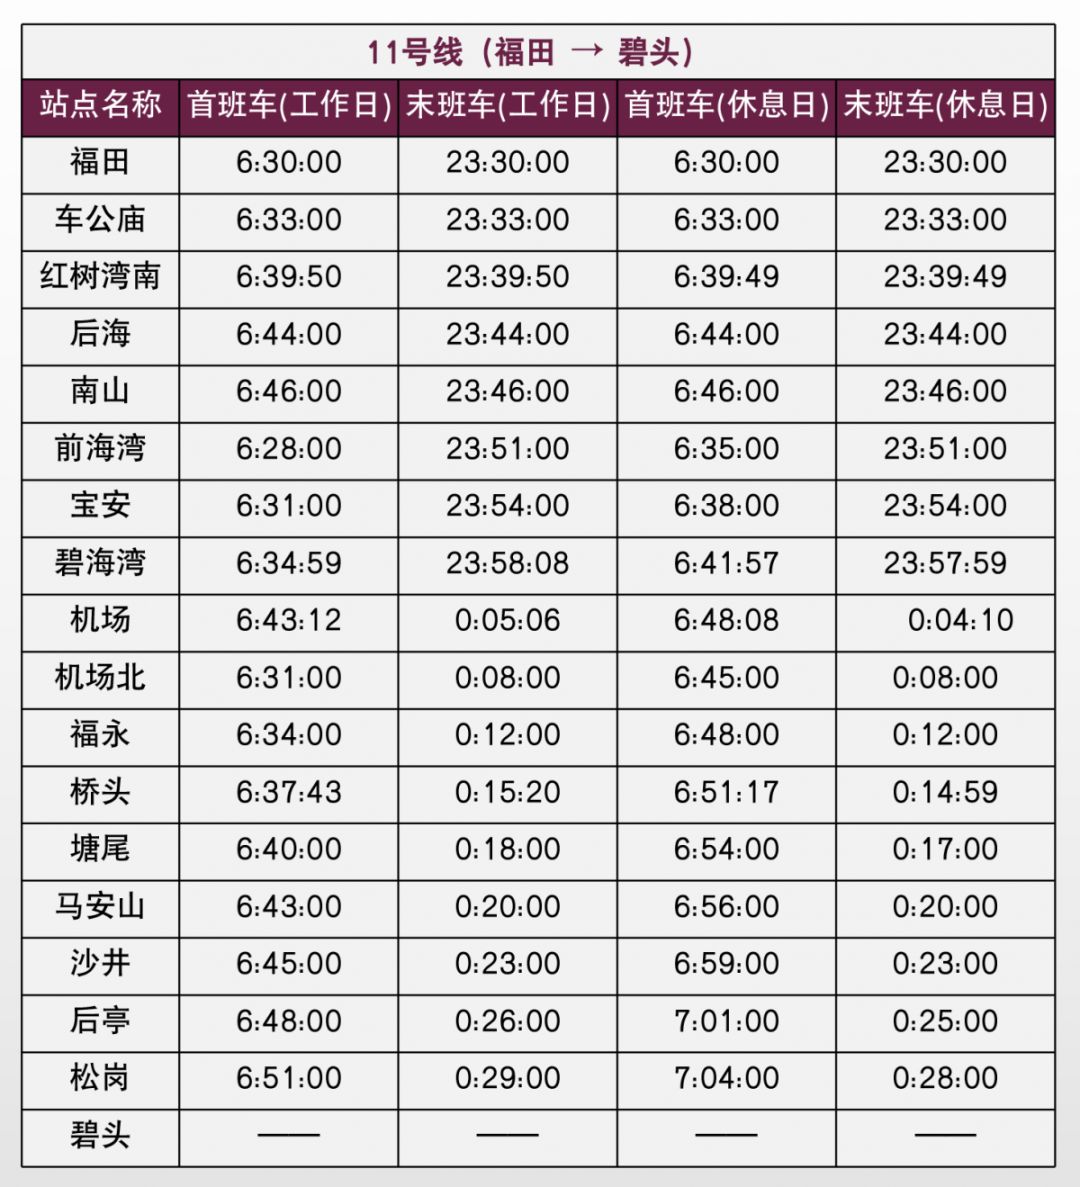 收藏备用史上最全深圳地铁运营时间表在深圳的你值得收藏